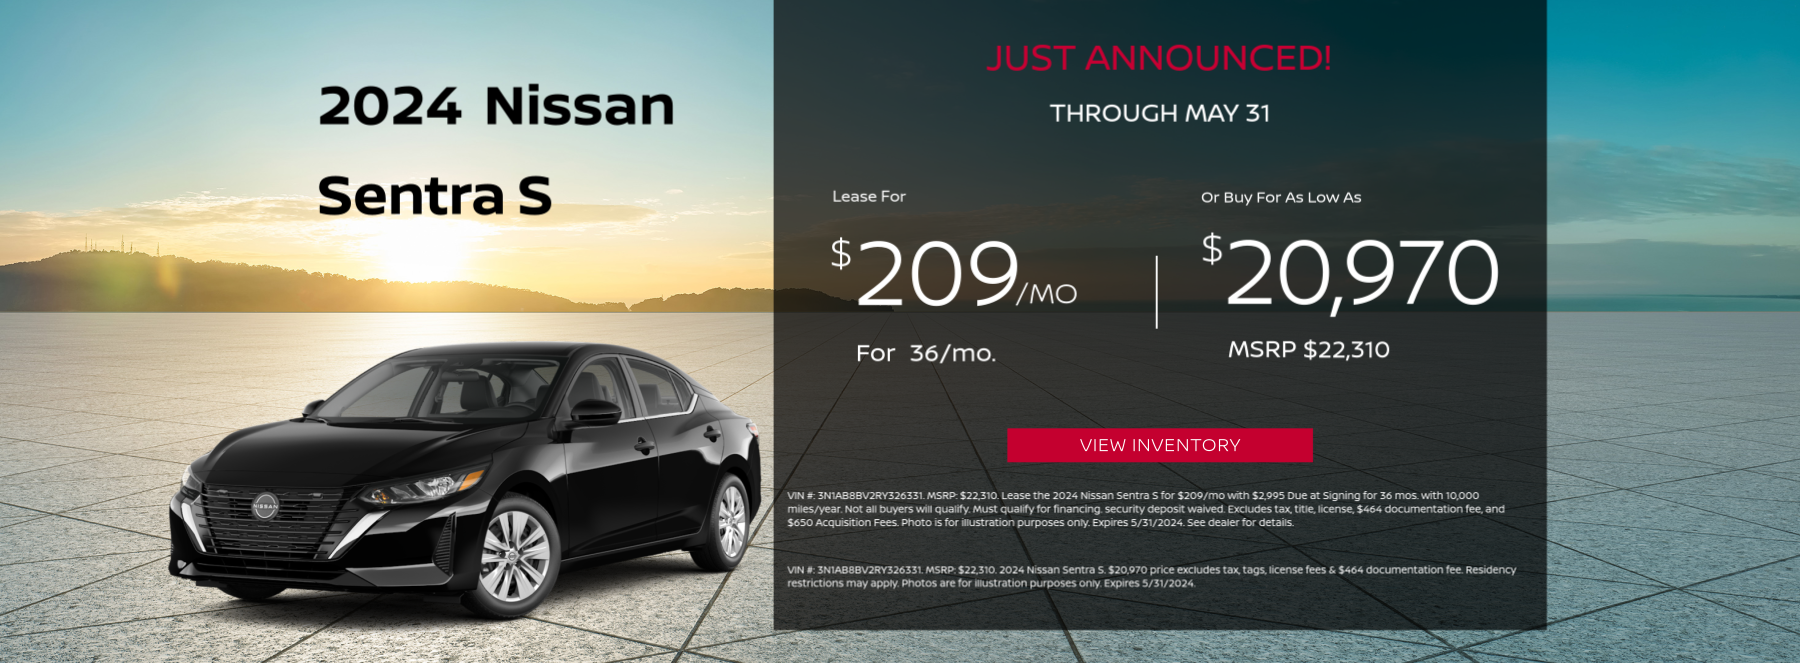 2024 Nissan Sentra Offer